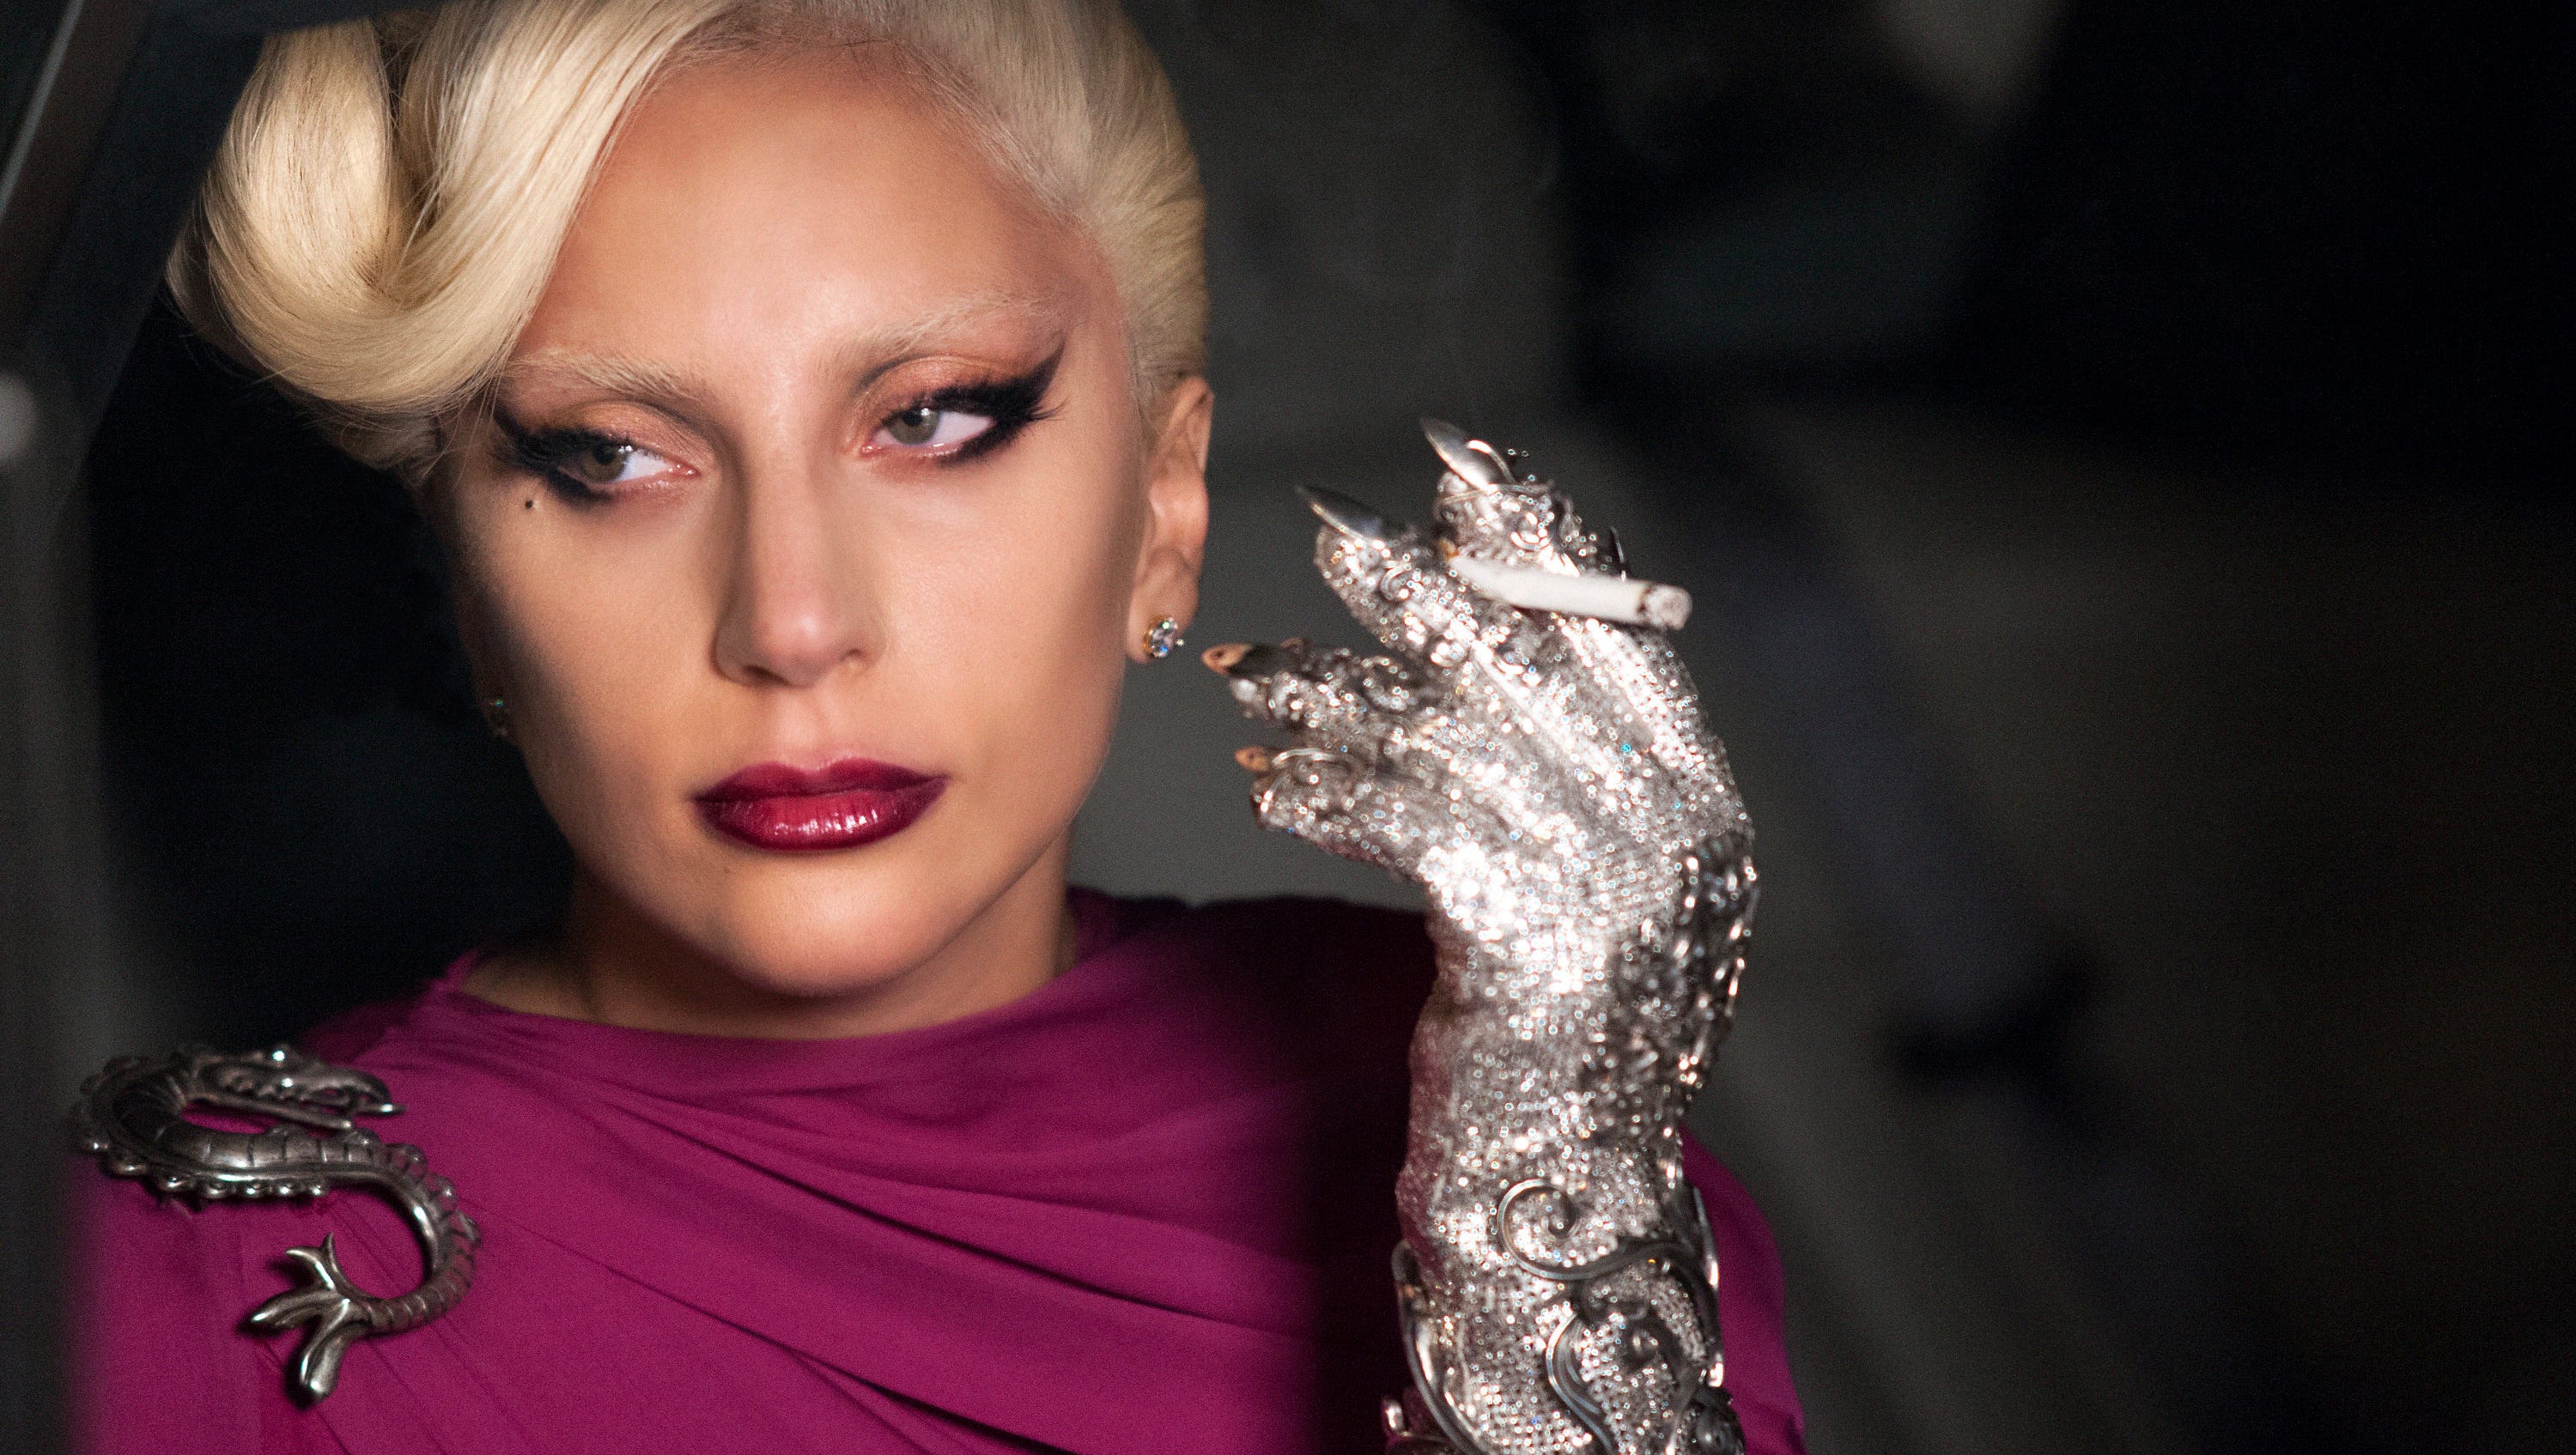 AHS: Hotel': Lady Gaga's craziest moments